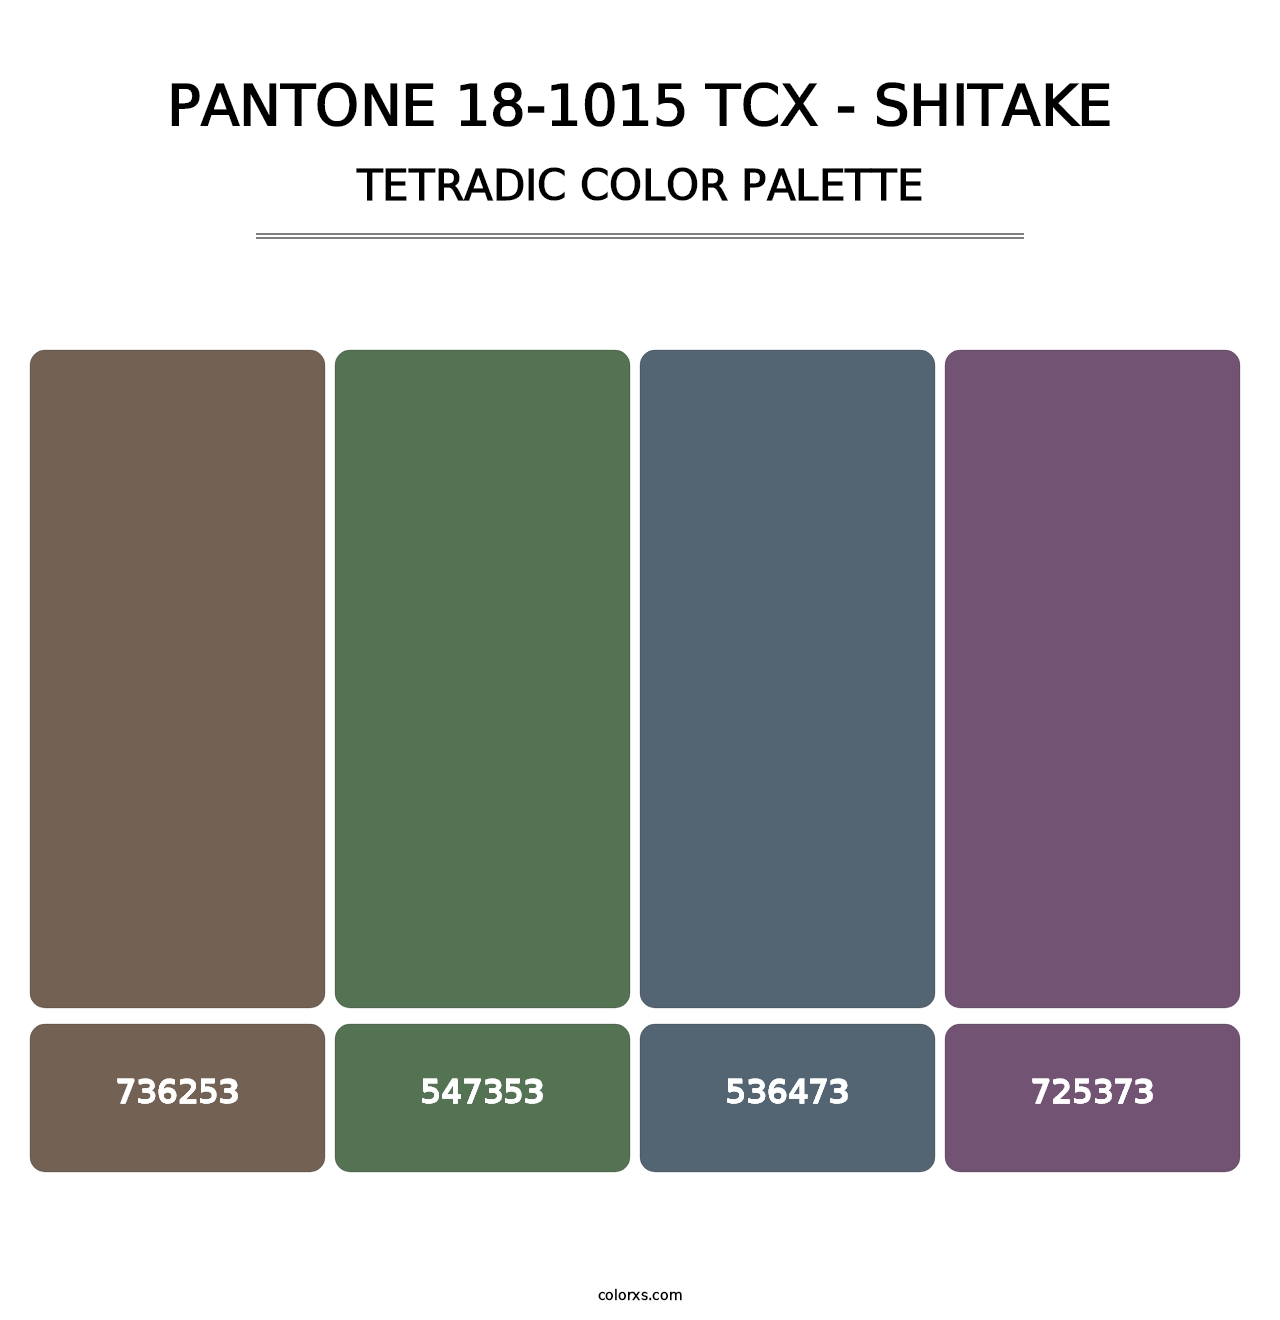 PANTONE 18-1015 TCX - Shitake - Tetradic Color Palette